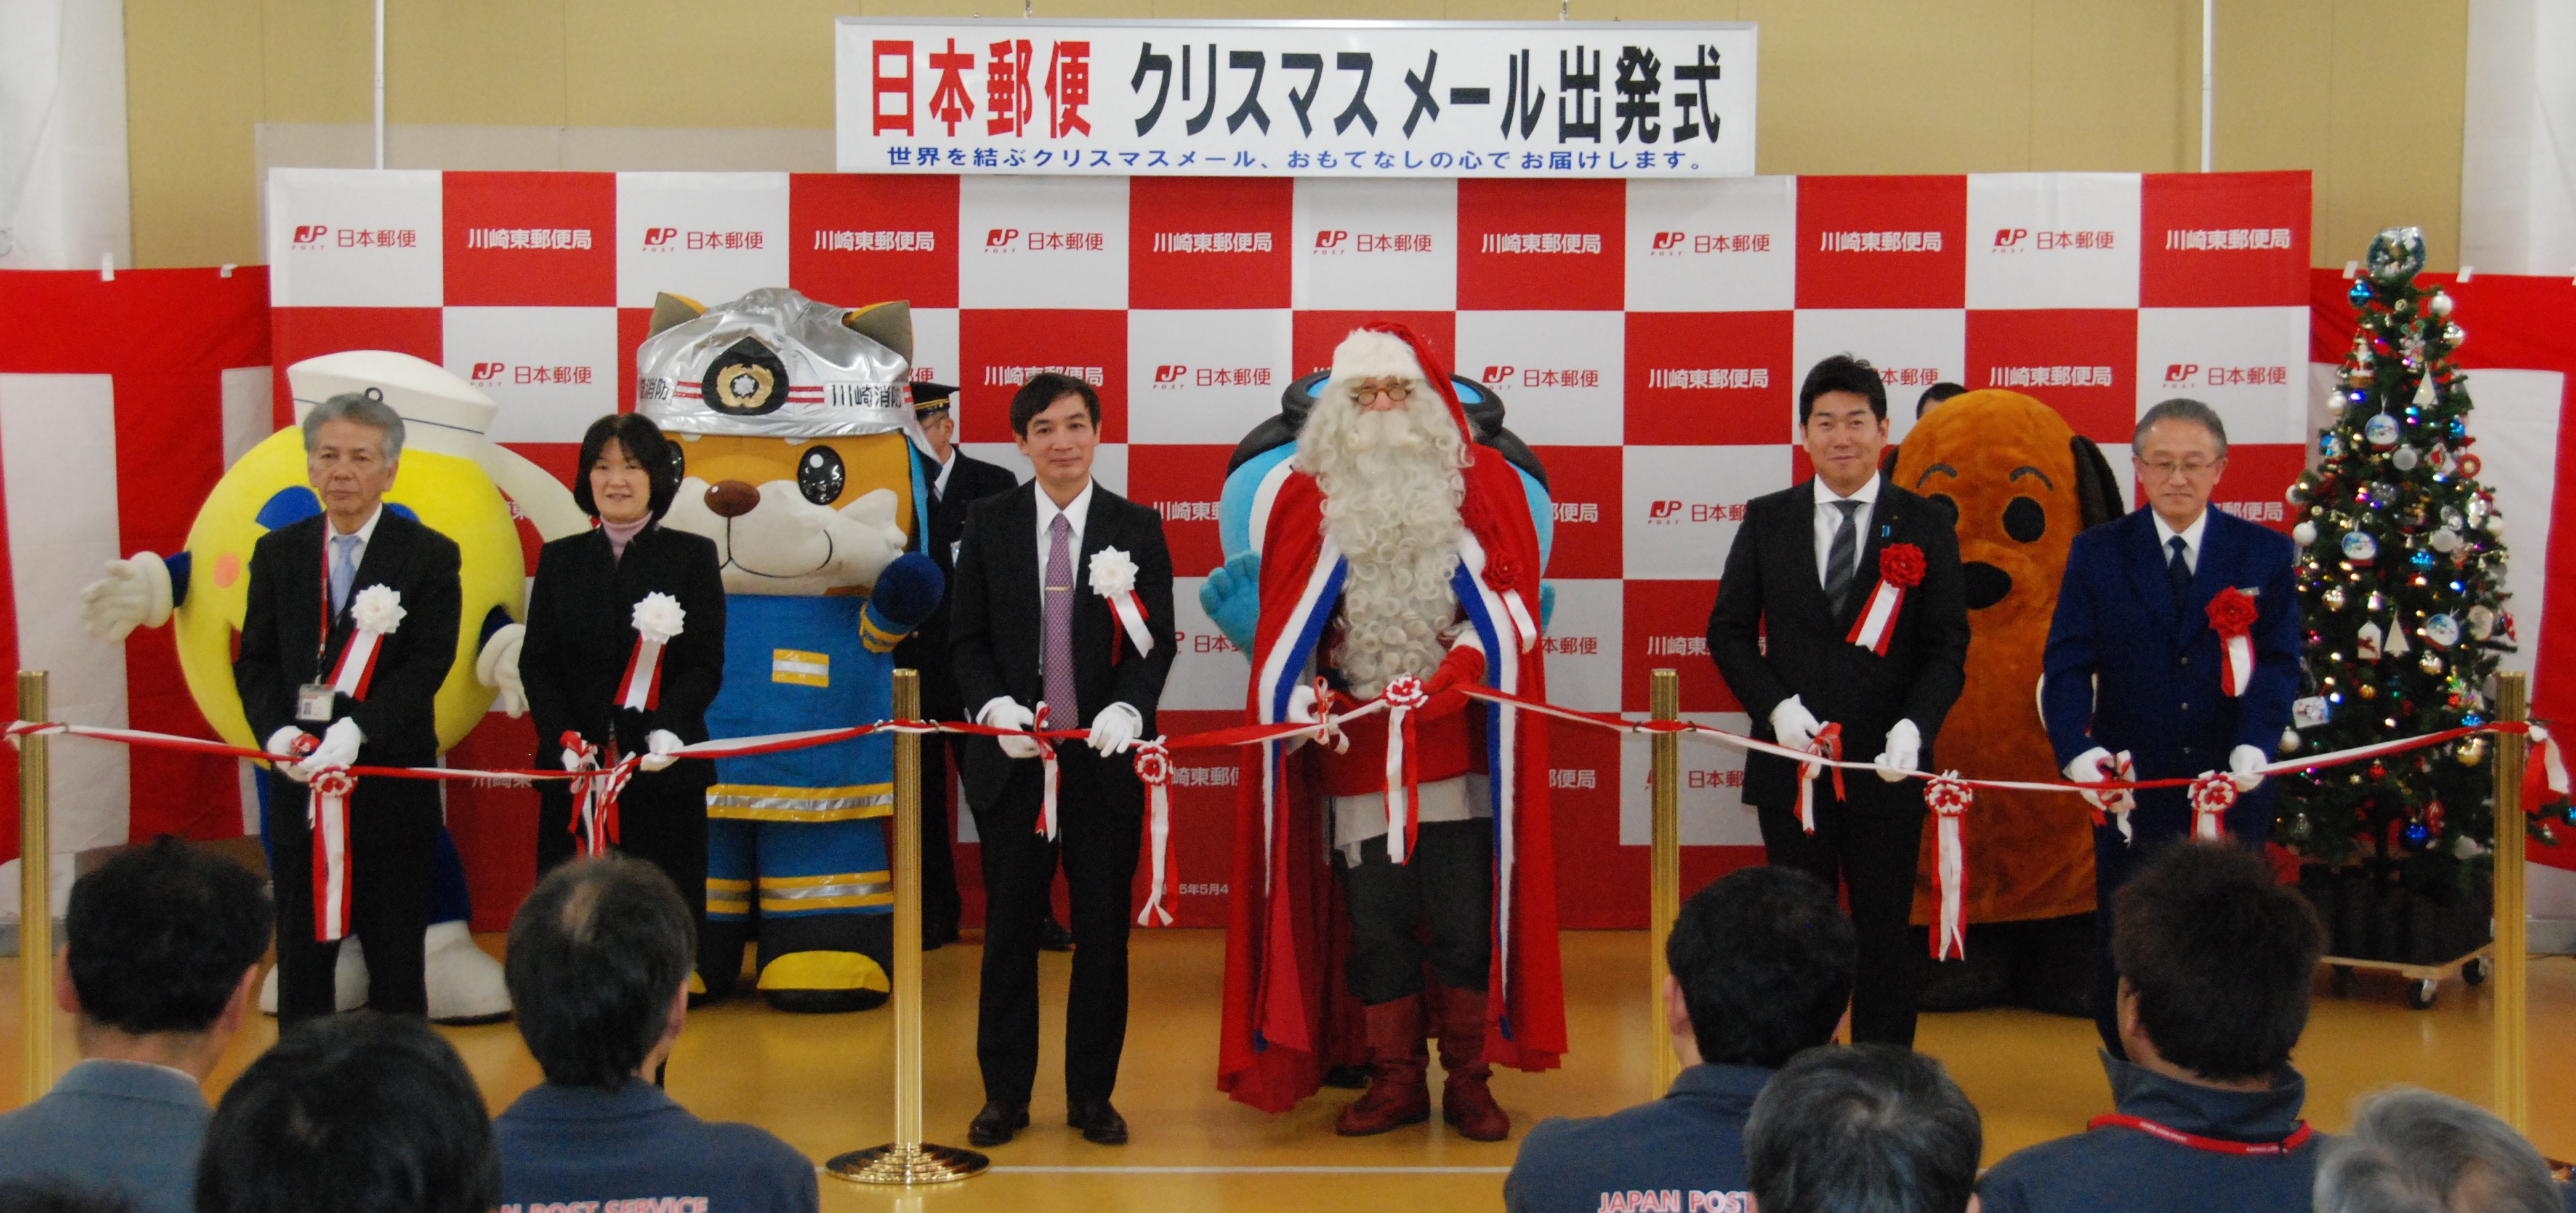 出発式のテープカットに望む福田市長(右から2番目)